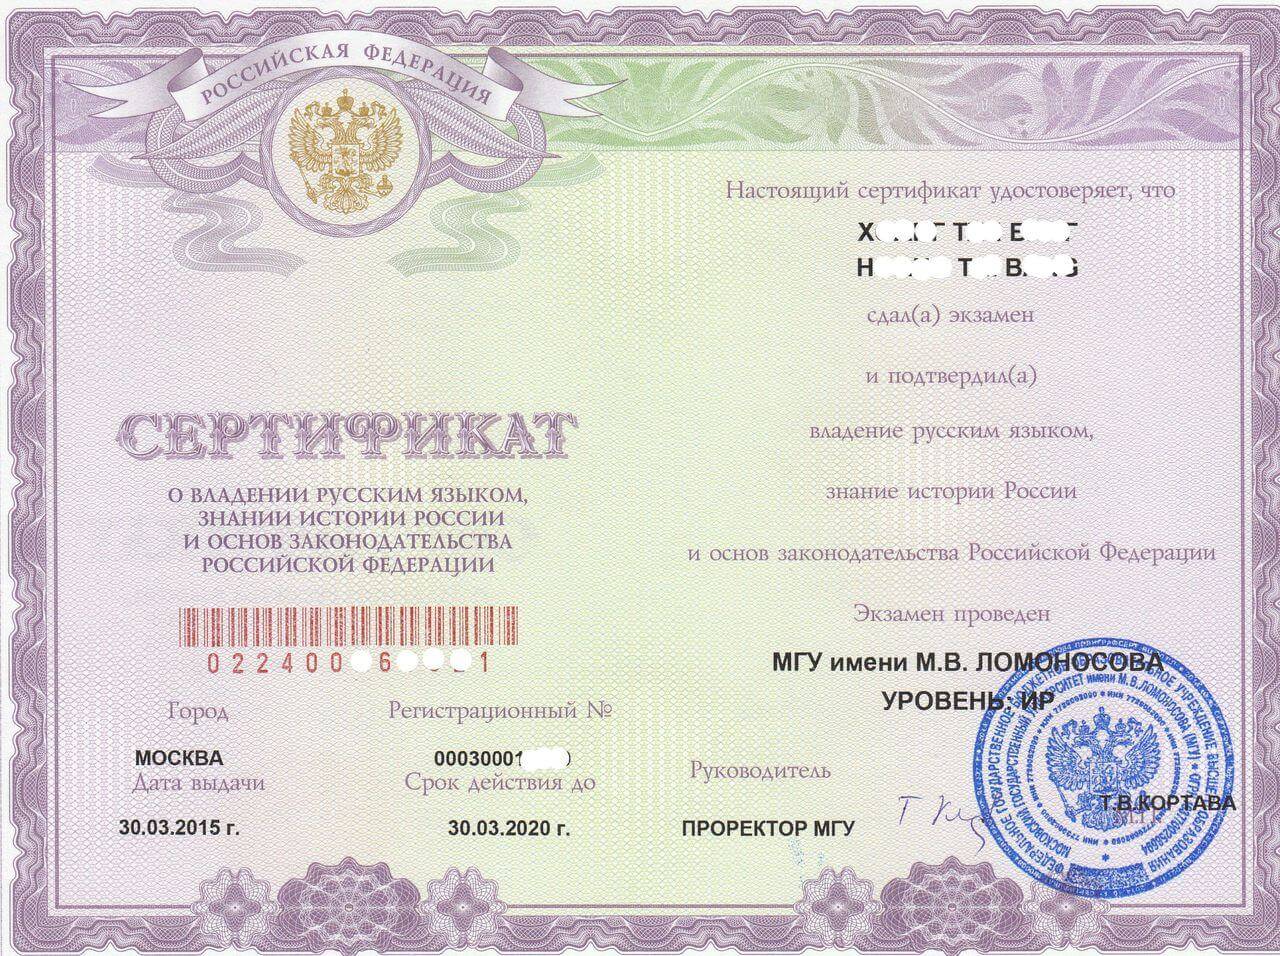 Сдача экзамена по русскому языку для получения гражданства россии